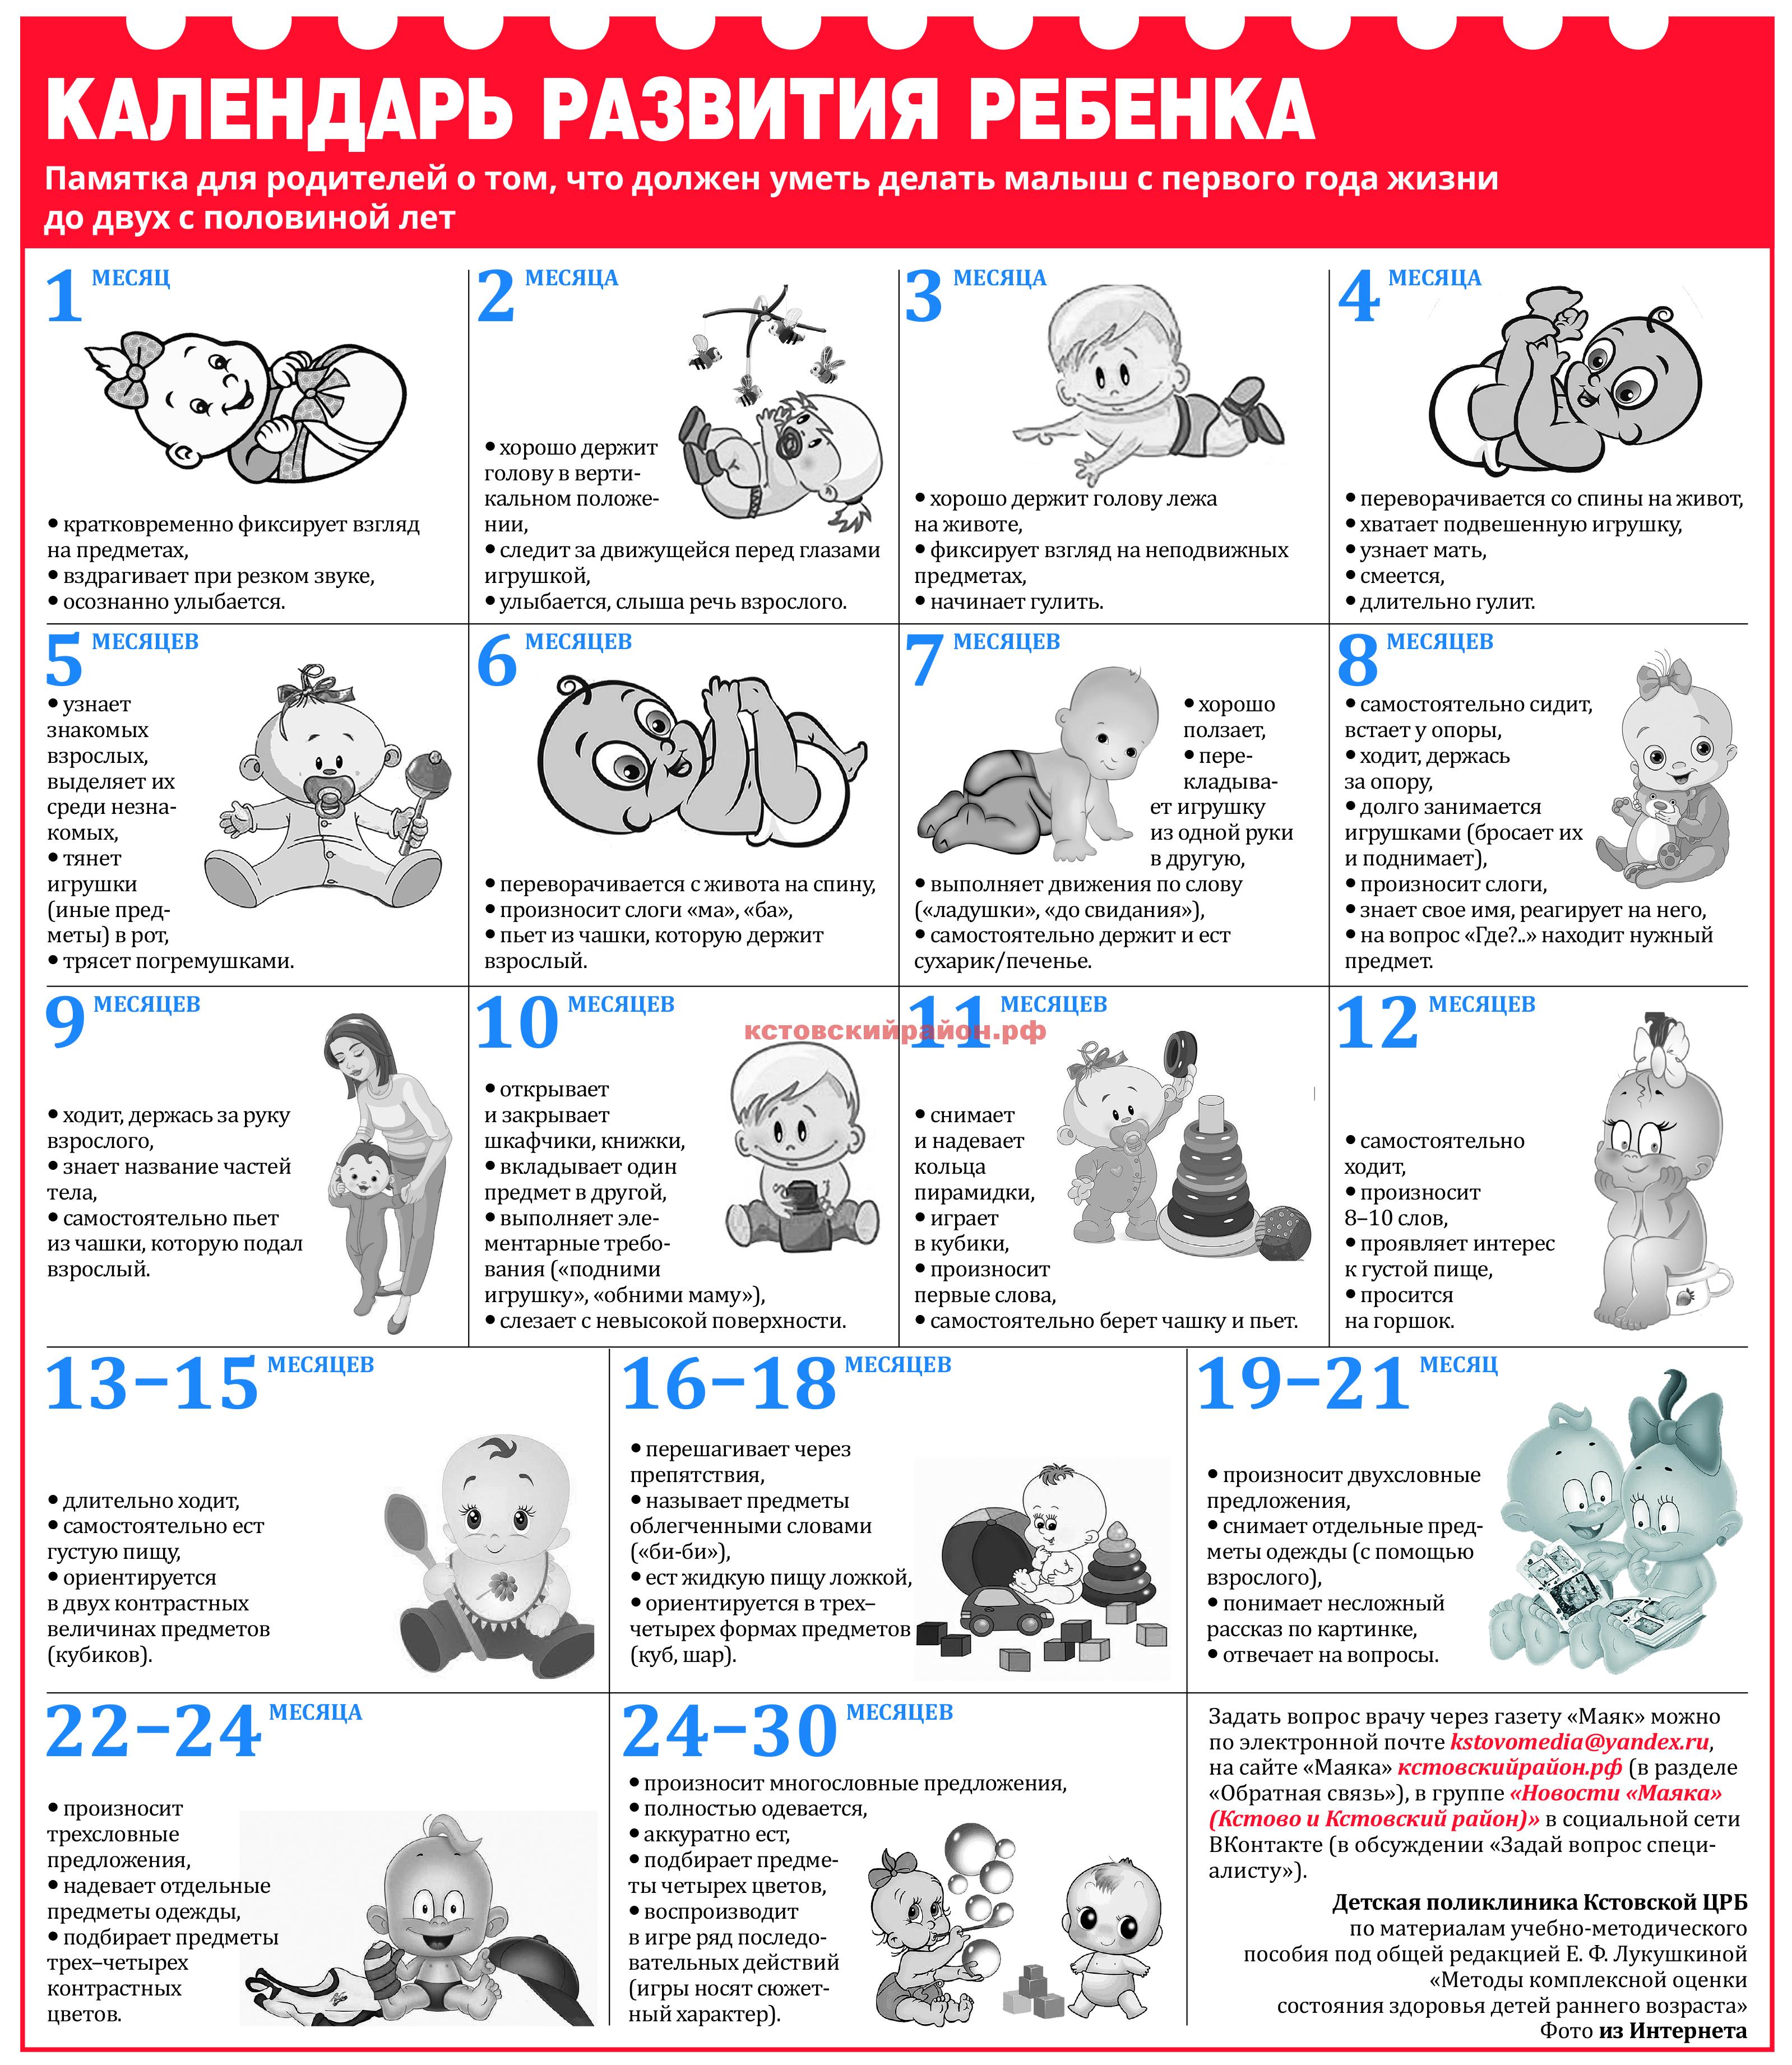 Плановый осмотр ребенка до года – таблица графика врачей | полезные материалы